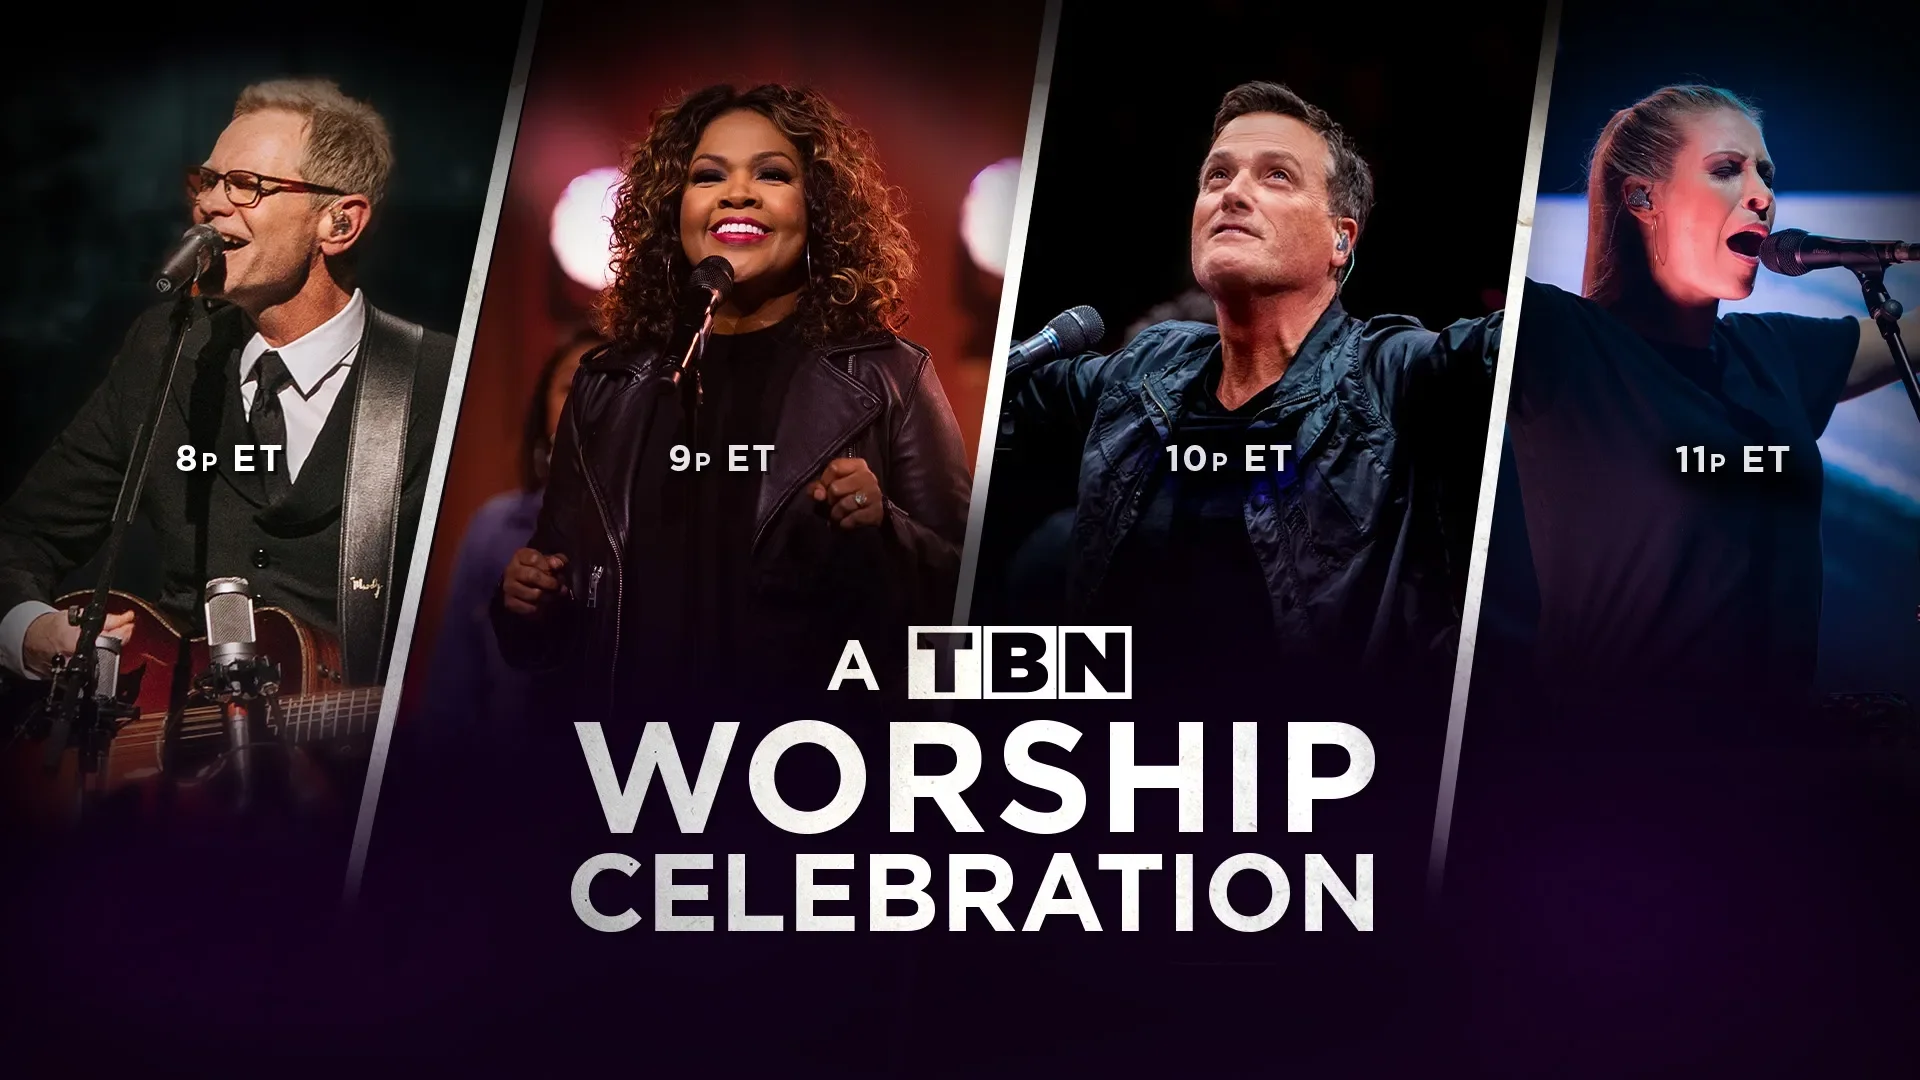 A TBN Worship Celebration